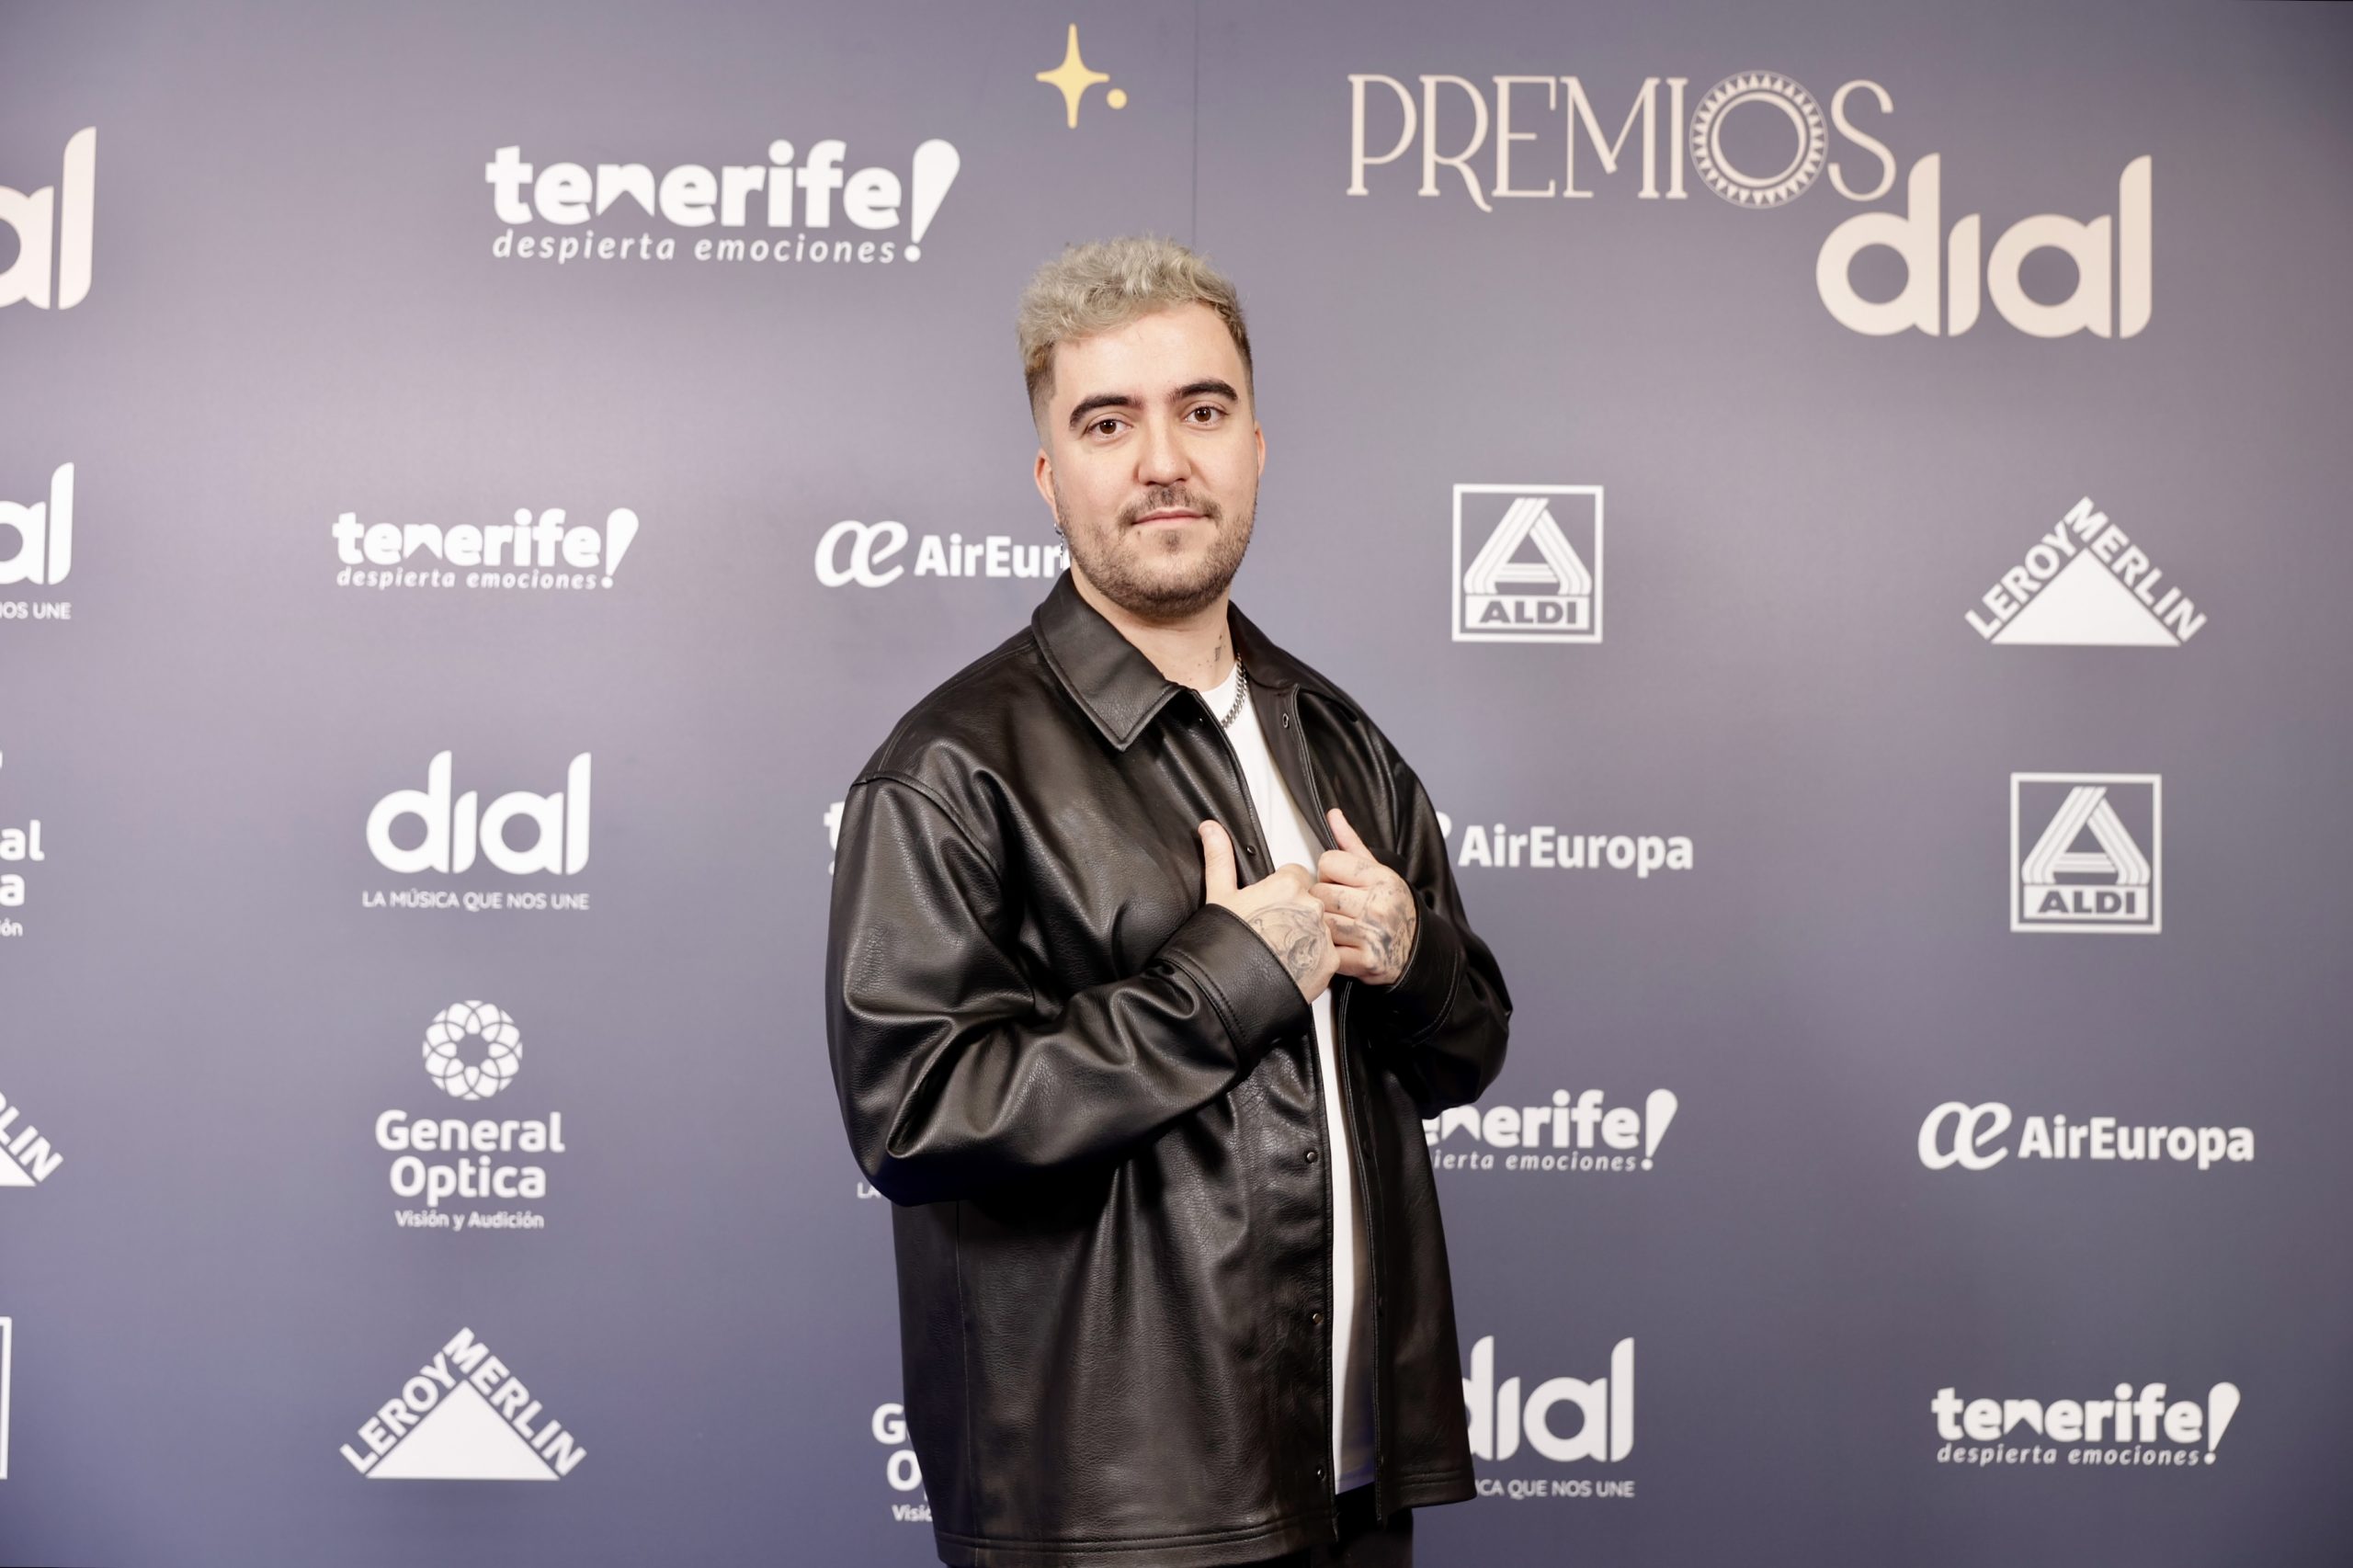 Beret en la rueda de prensa de Premios Dial Tenerife